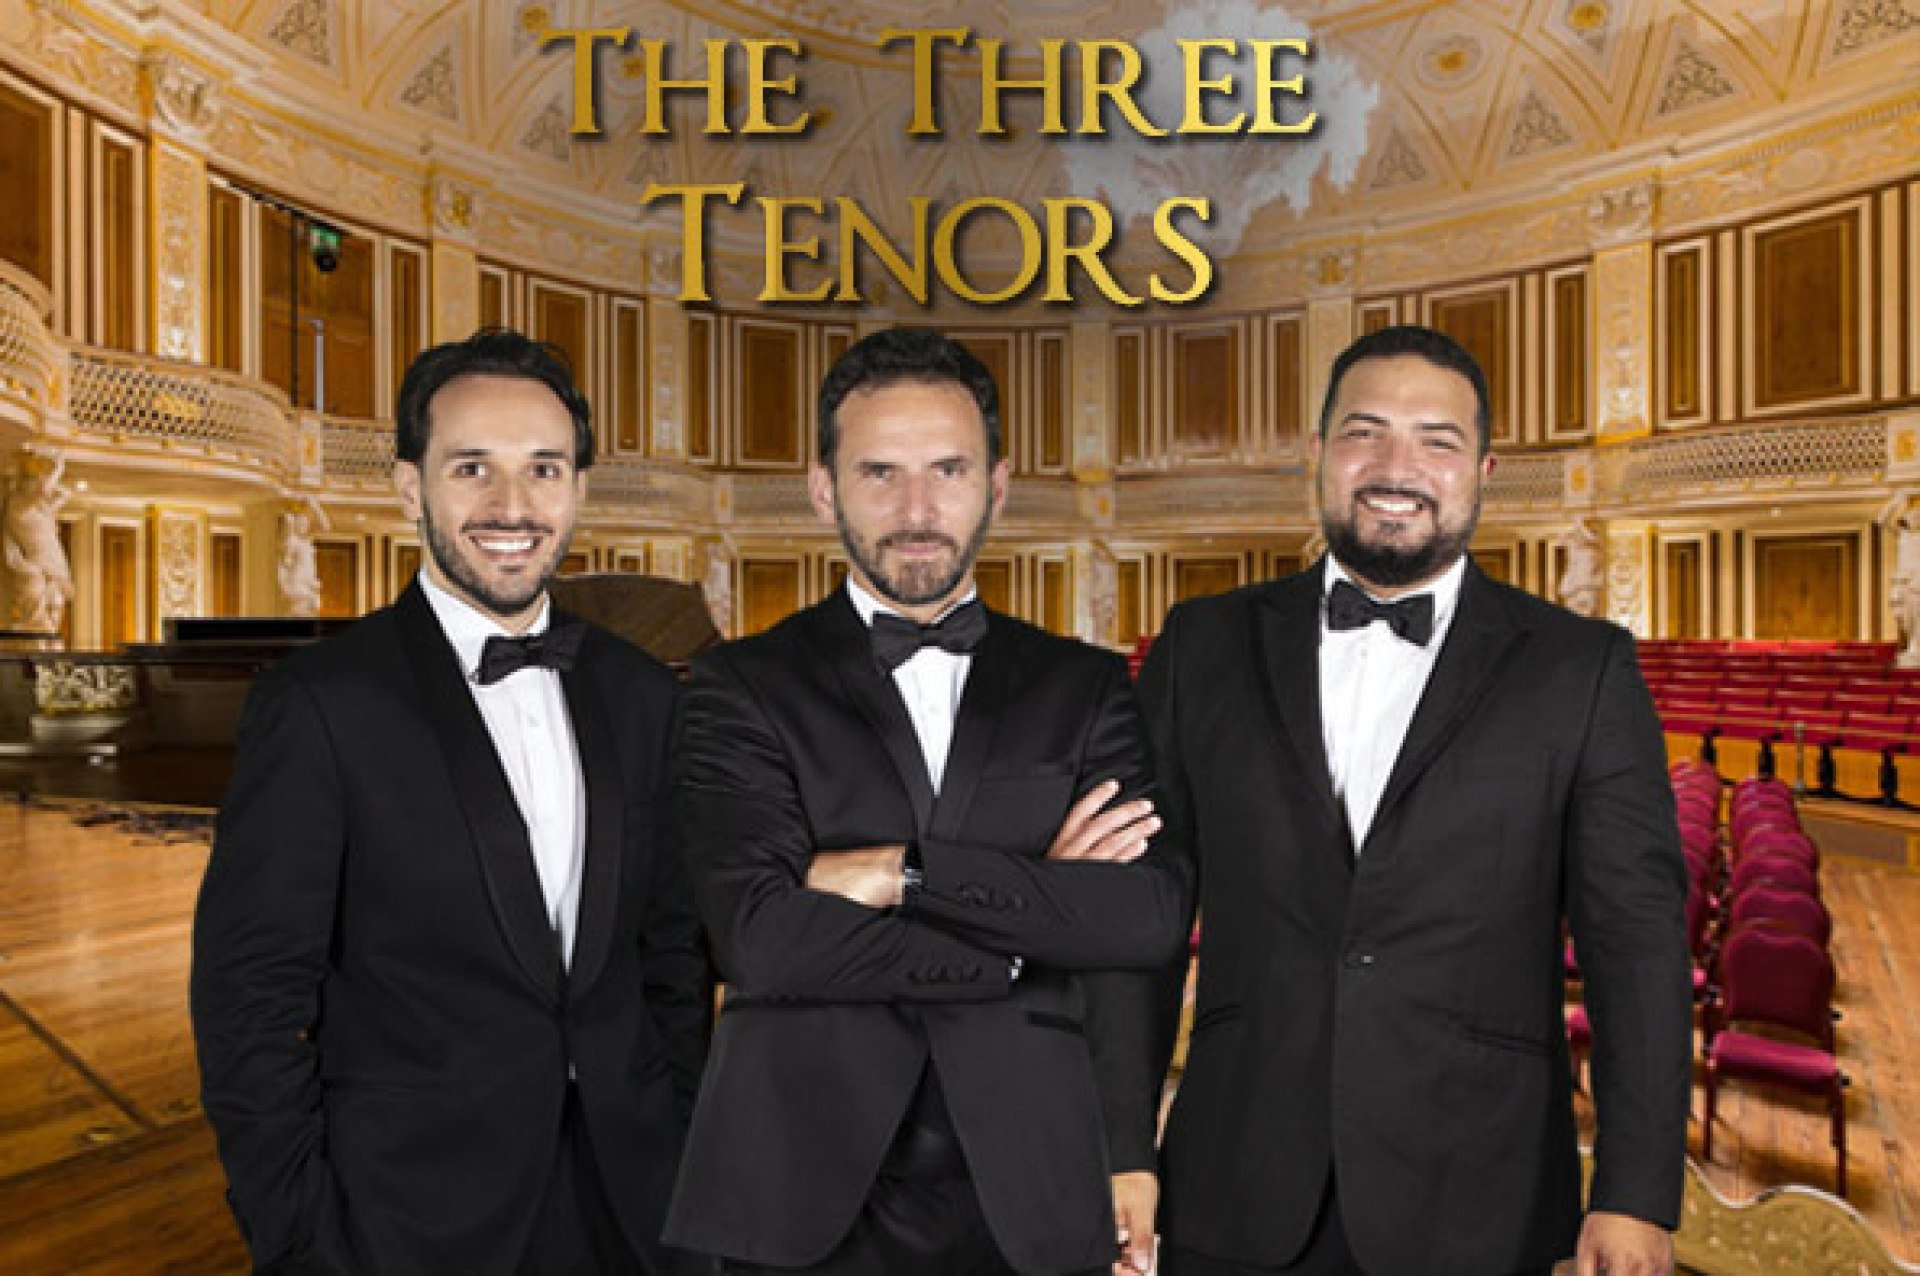 Los tres tenores en Liverpool